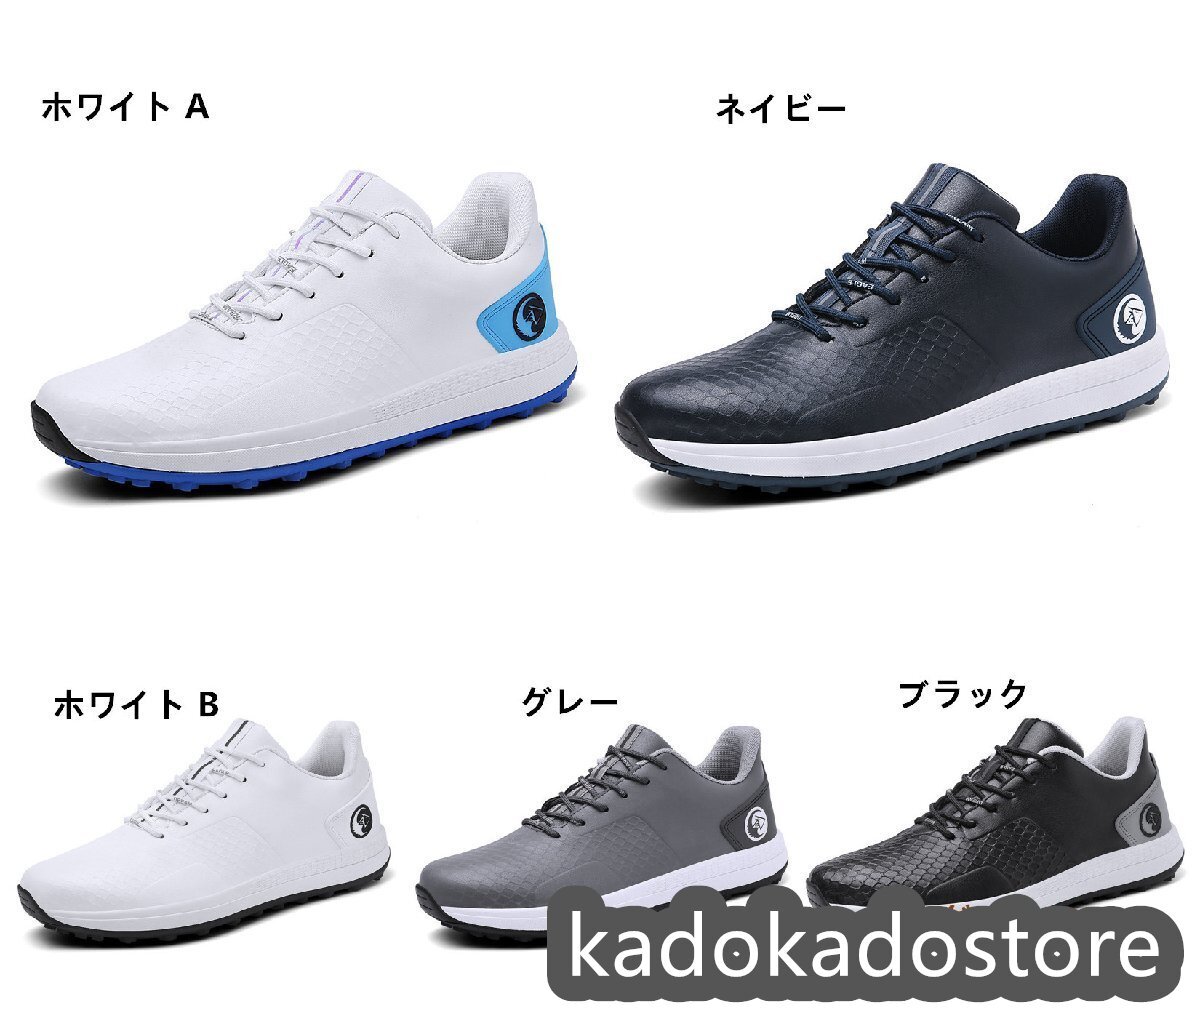  новый товар распродажа туфли для гольфа спортивные туфли мужской спорт обувь Деннис спортивная обувь прогулочные туфли легкий водонепроницаемый . скользить выдерживающий . белый B25-28.5